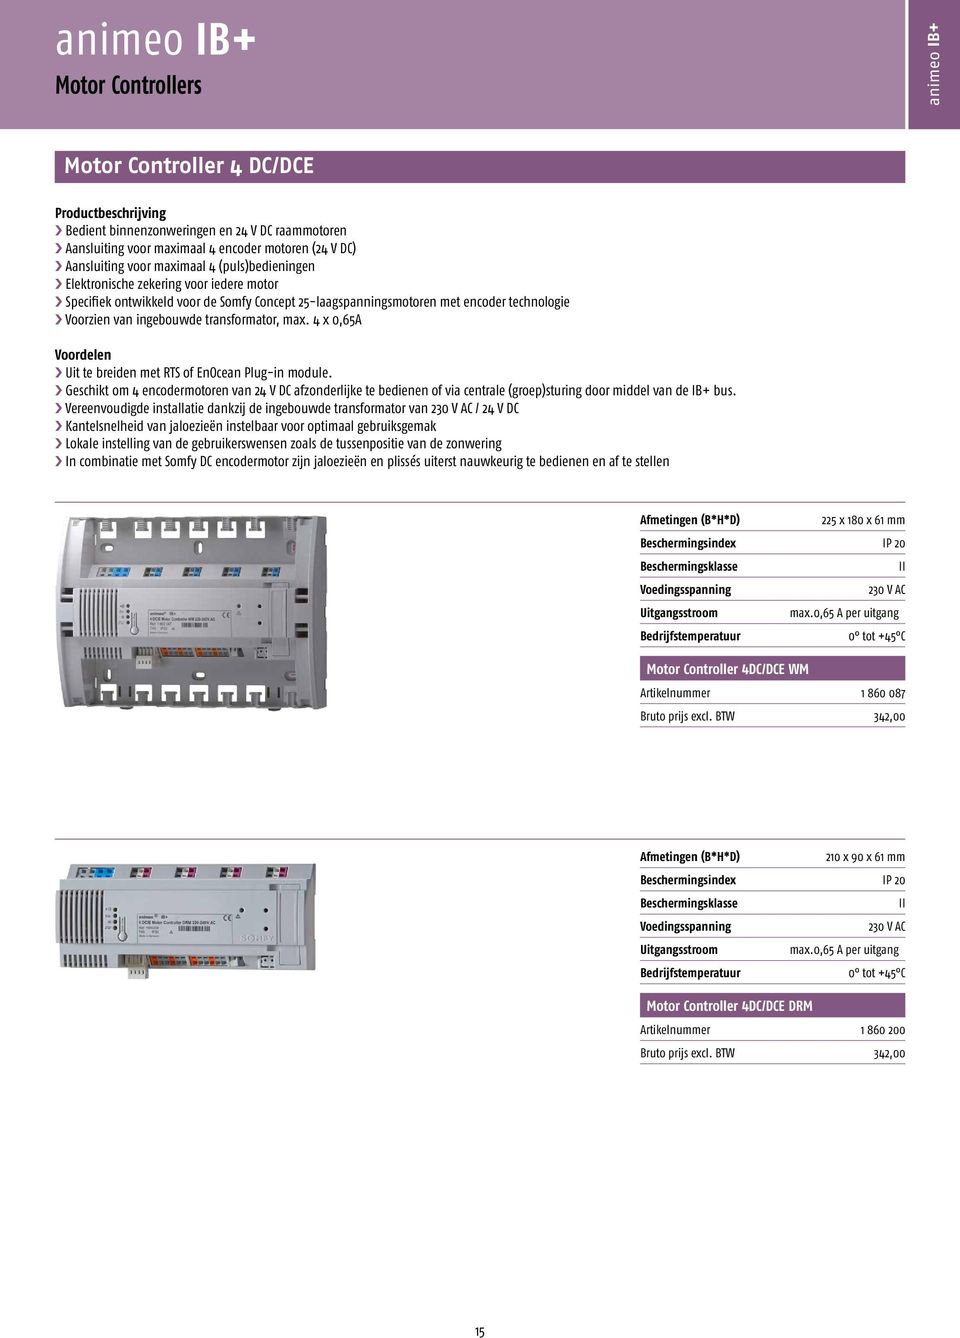 4 x 0,65A Voordelen Uit te breiden met RTS of EnOcean Plug-in module. Geschikt om 4 encodermotoren van 24 V DC afzonderlijke te bedienen of via centrale (groep)sturing door middel van de IB+ bus.